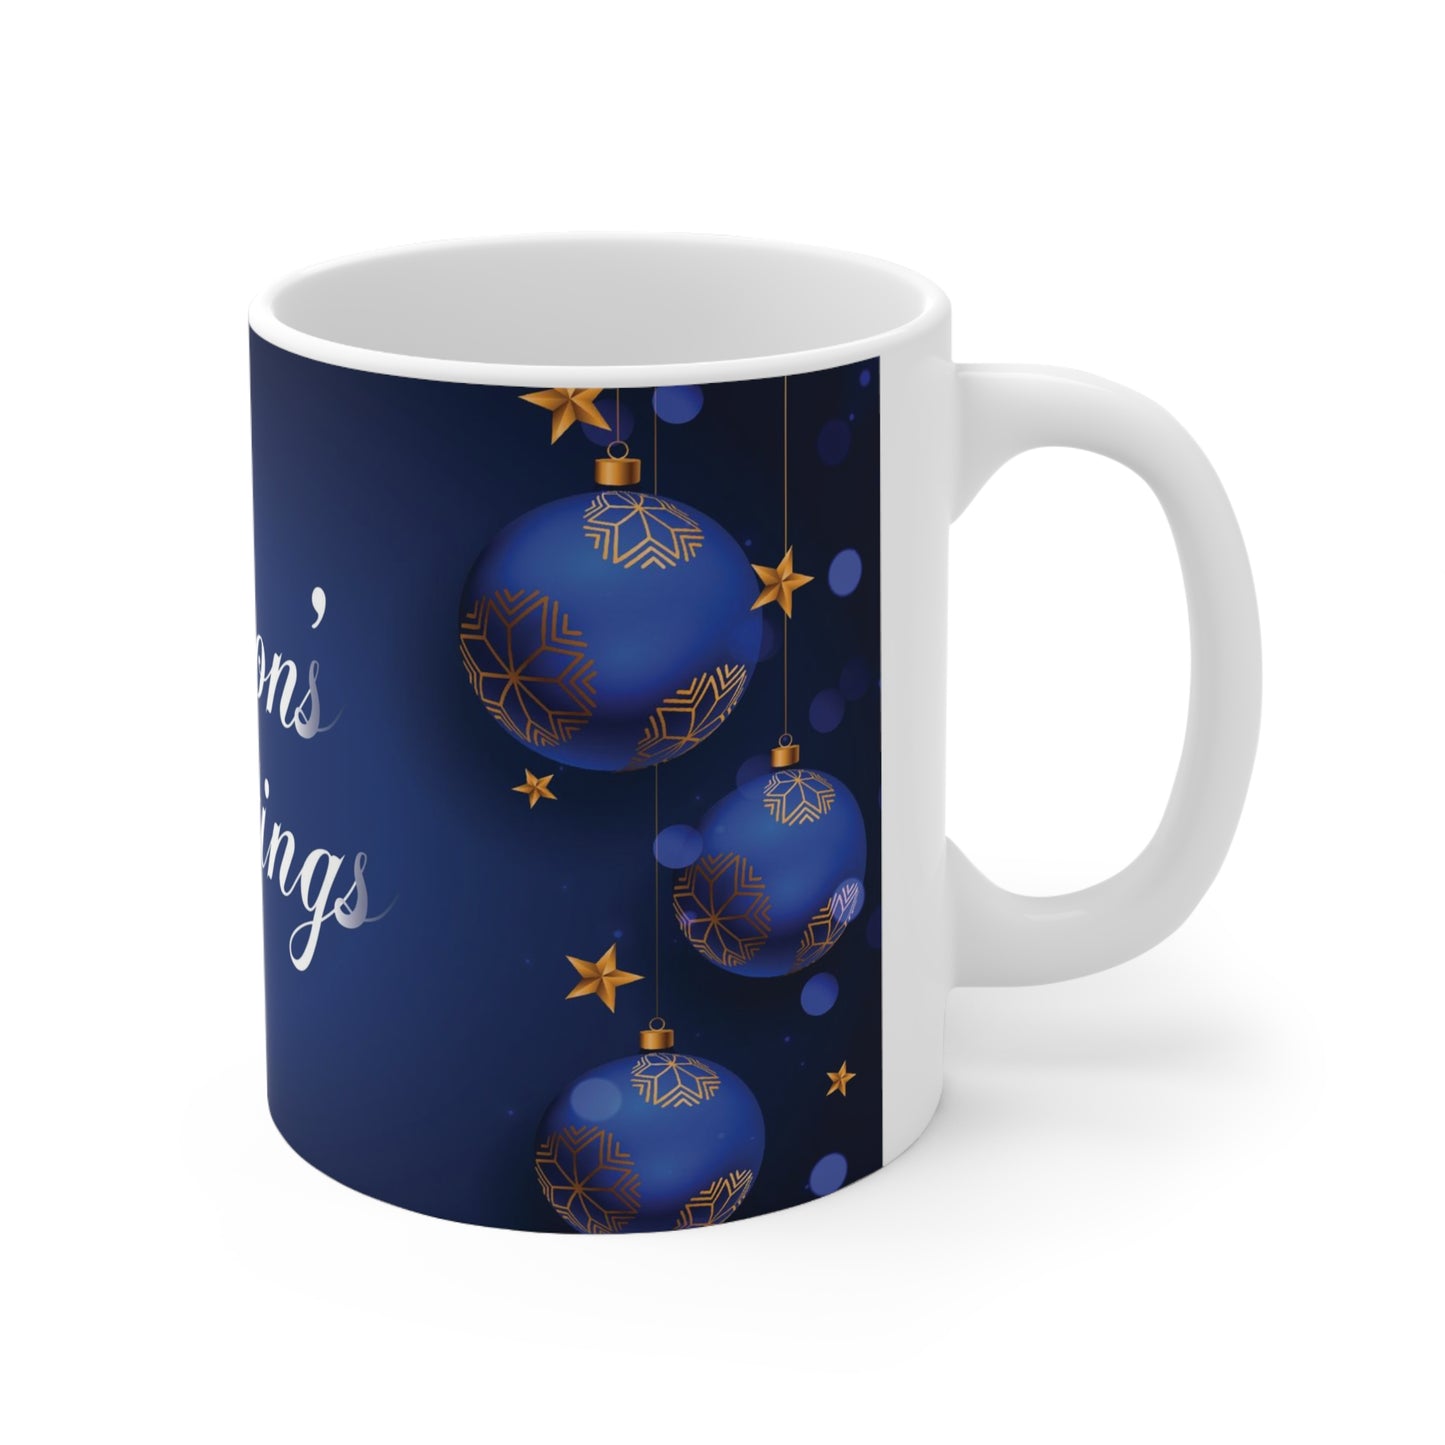 Holiday Ceramic Mug 11oz, Seasons' Greetings, Blue